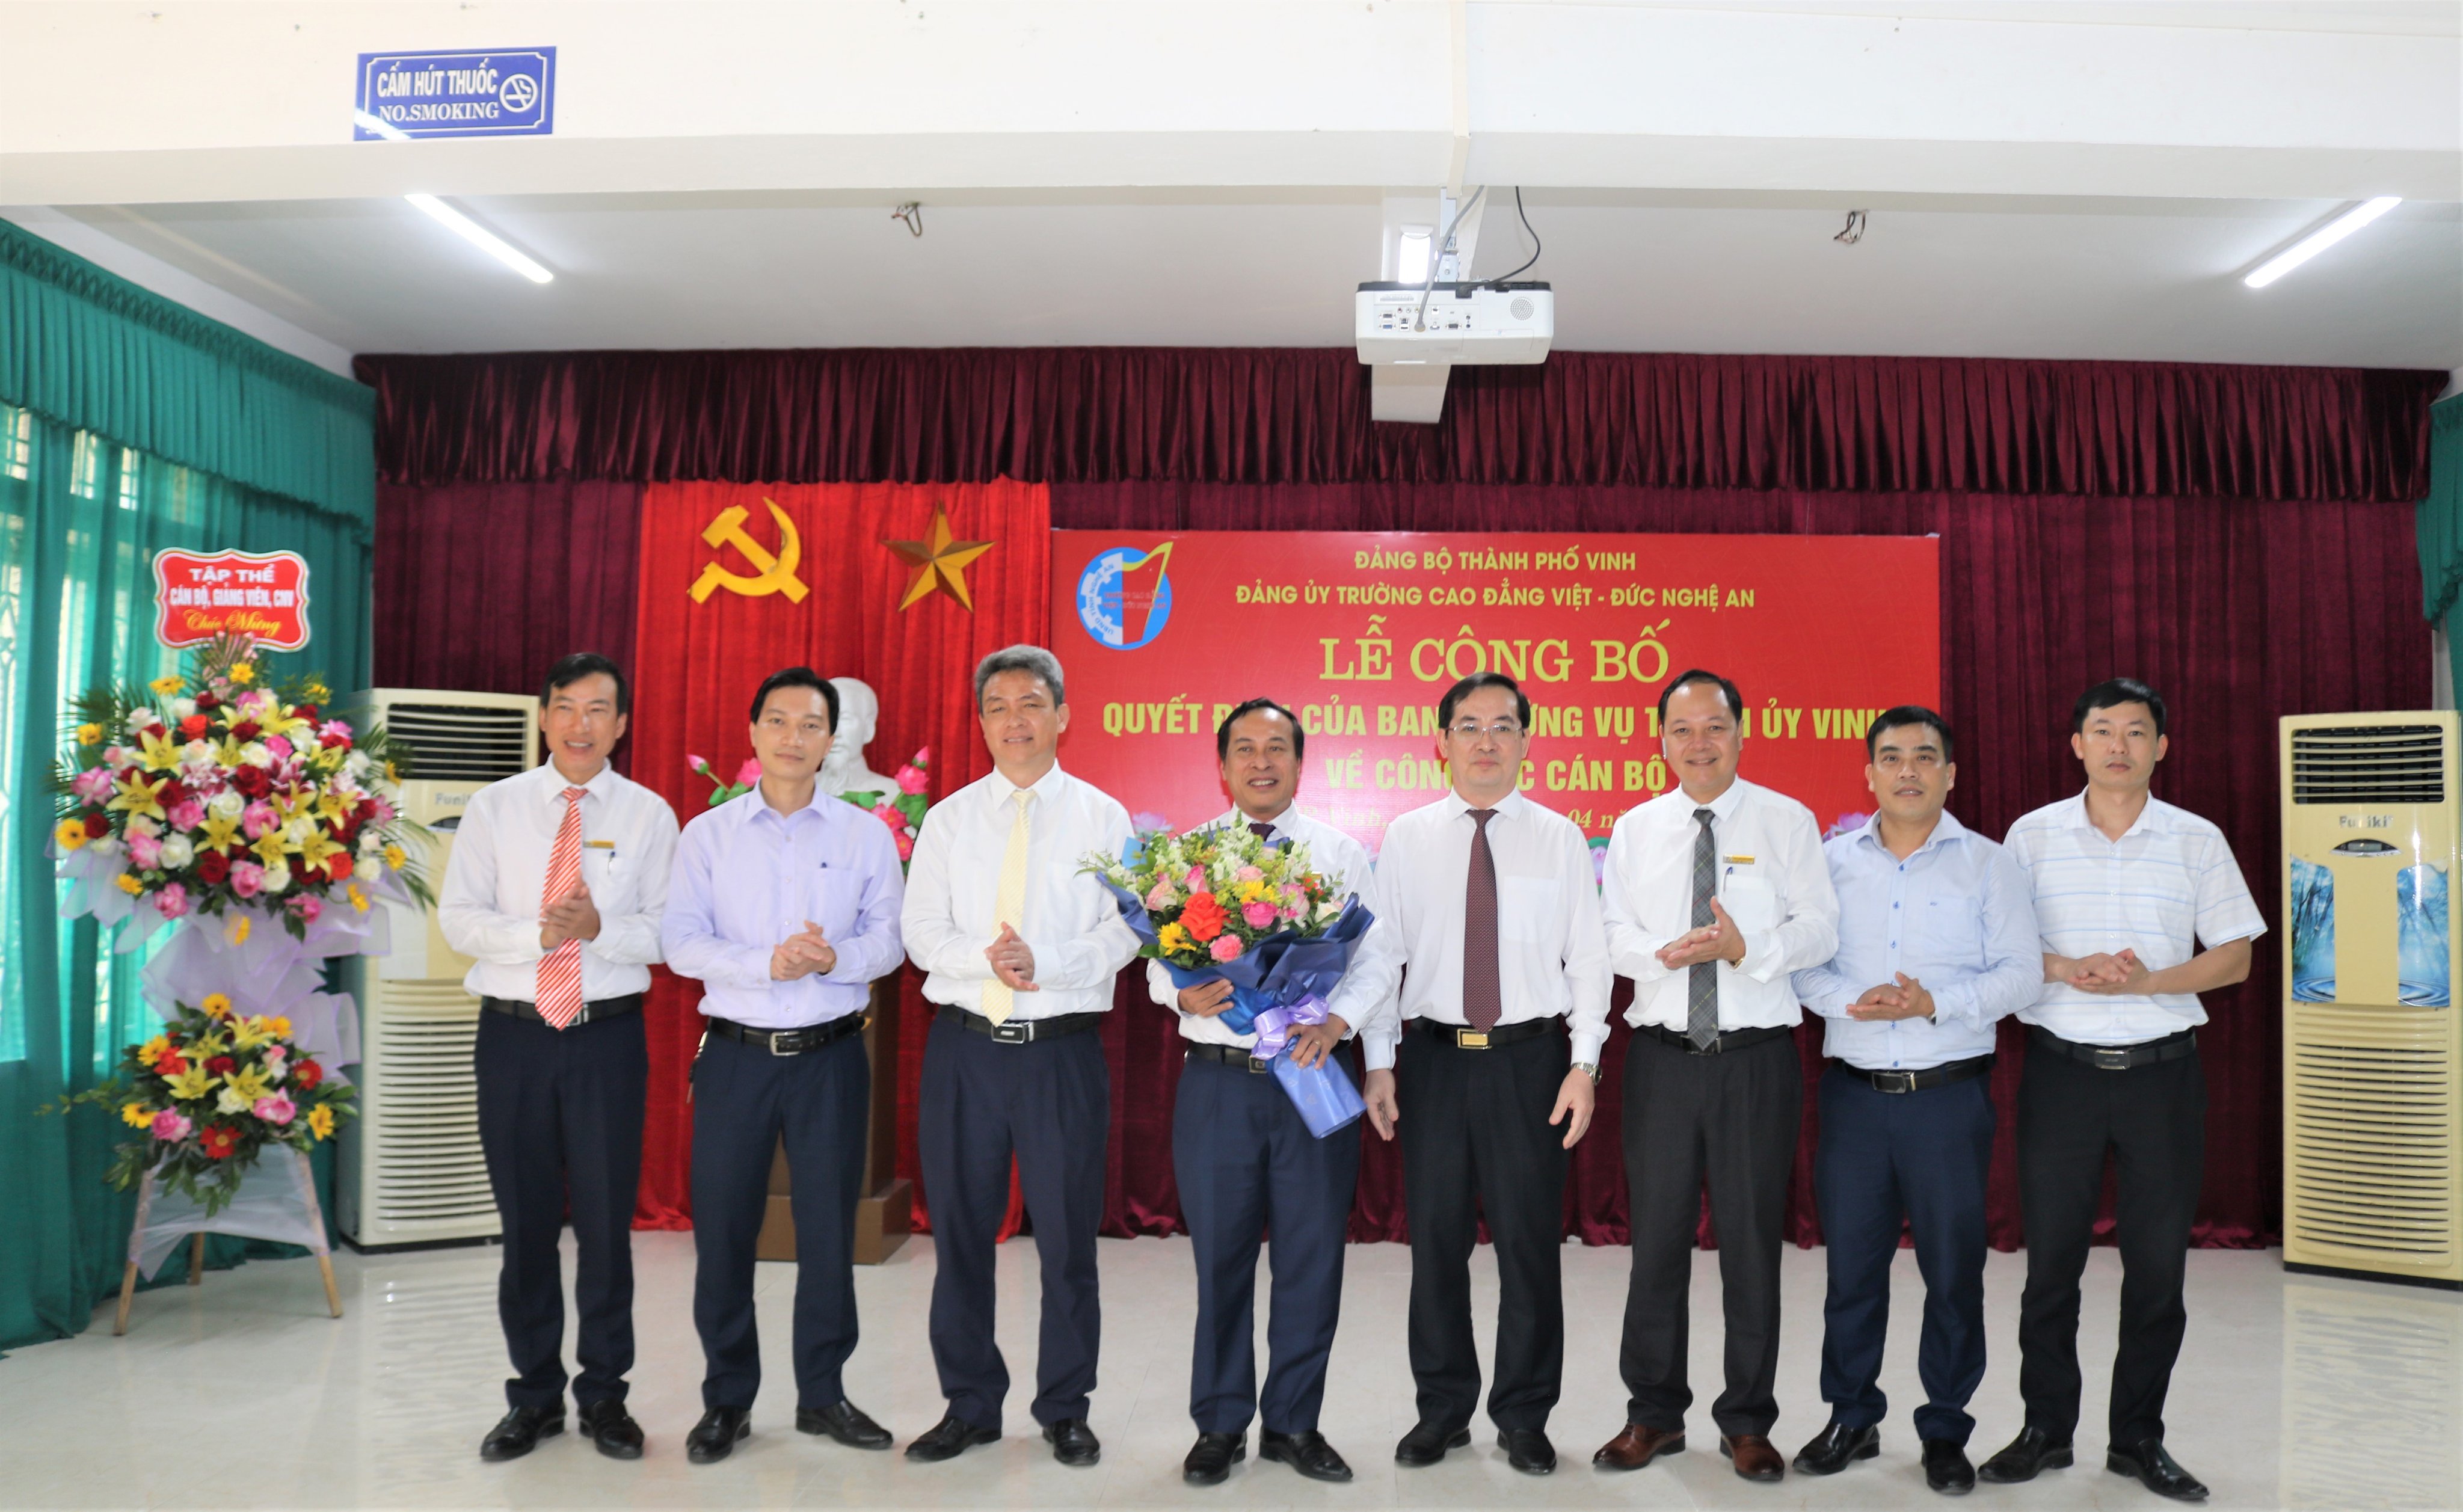   Lễ công bố và trao Quyết định chuẩn y chức danh Bí thư Đảng ủy Trường Cao đẳng Việt – Đức Nghệ An, nhiệm kỳ 2020 – 2025